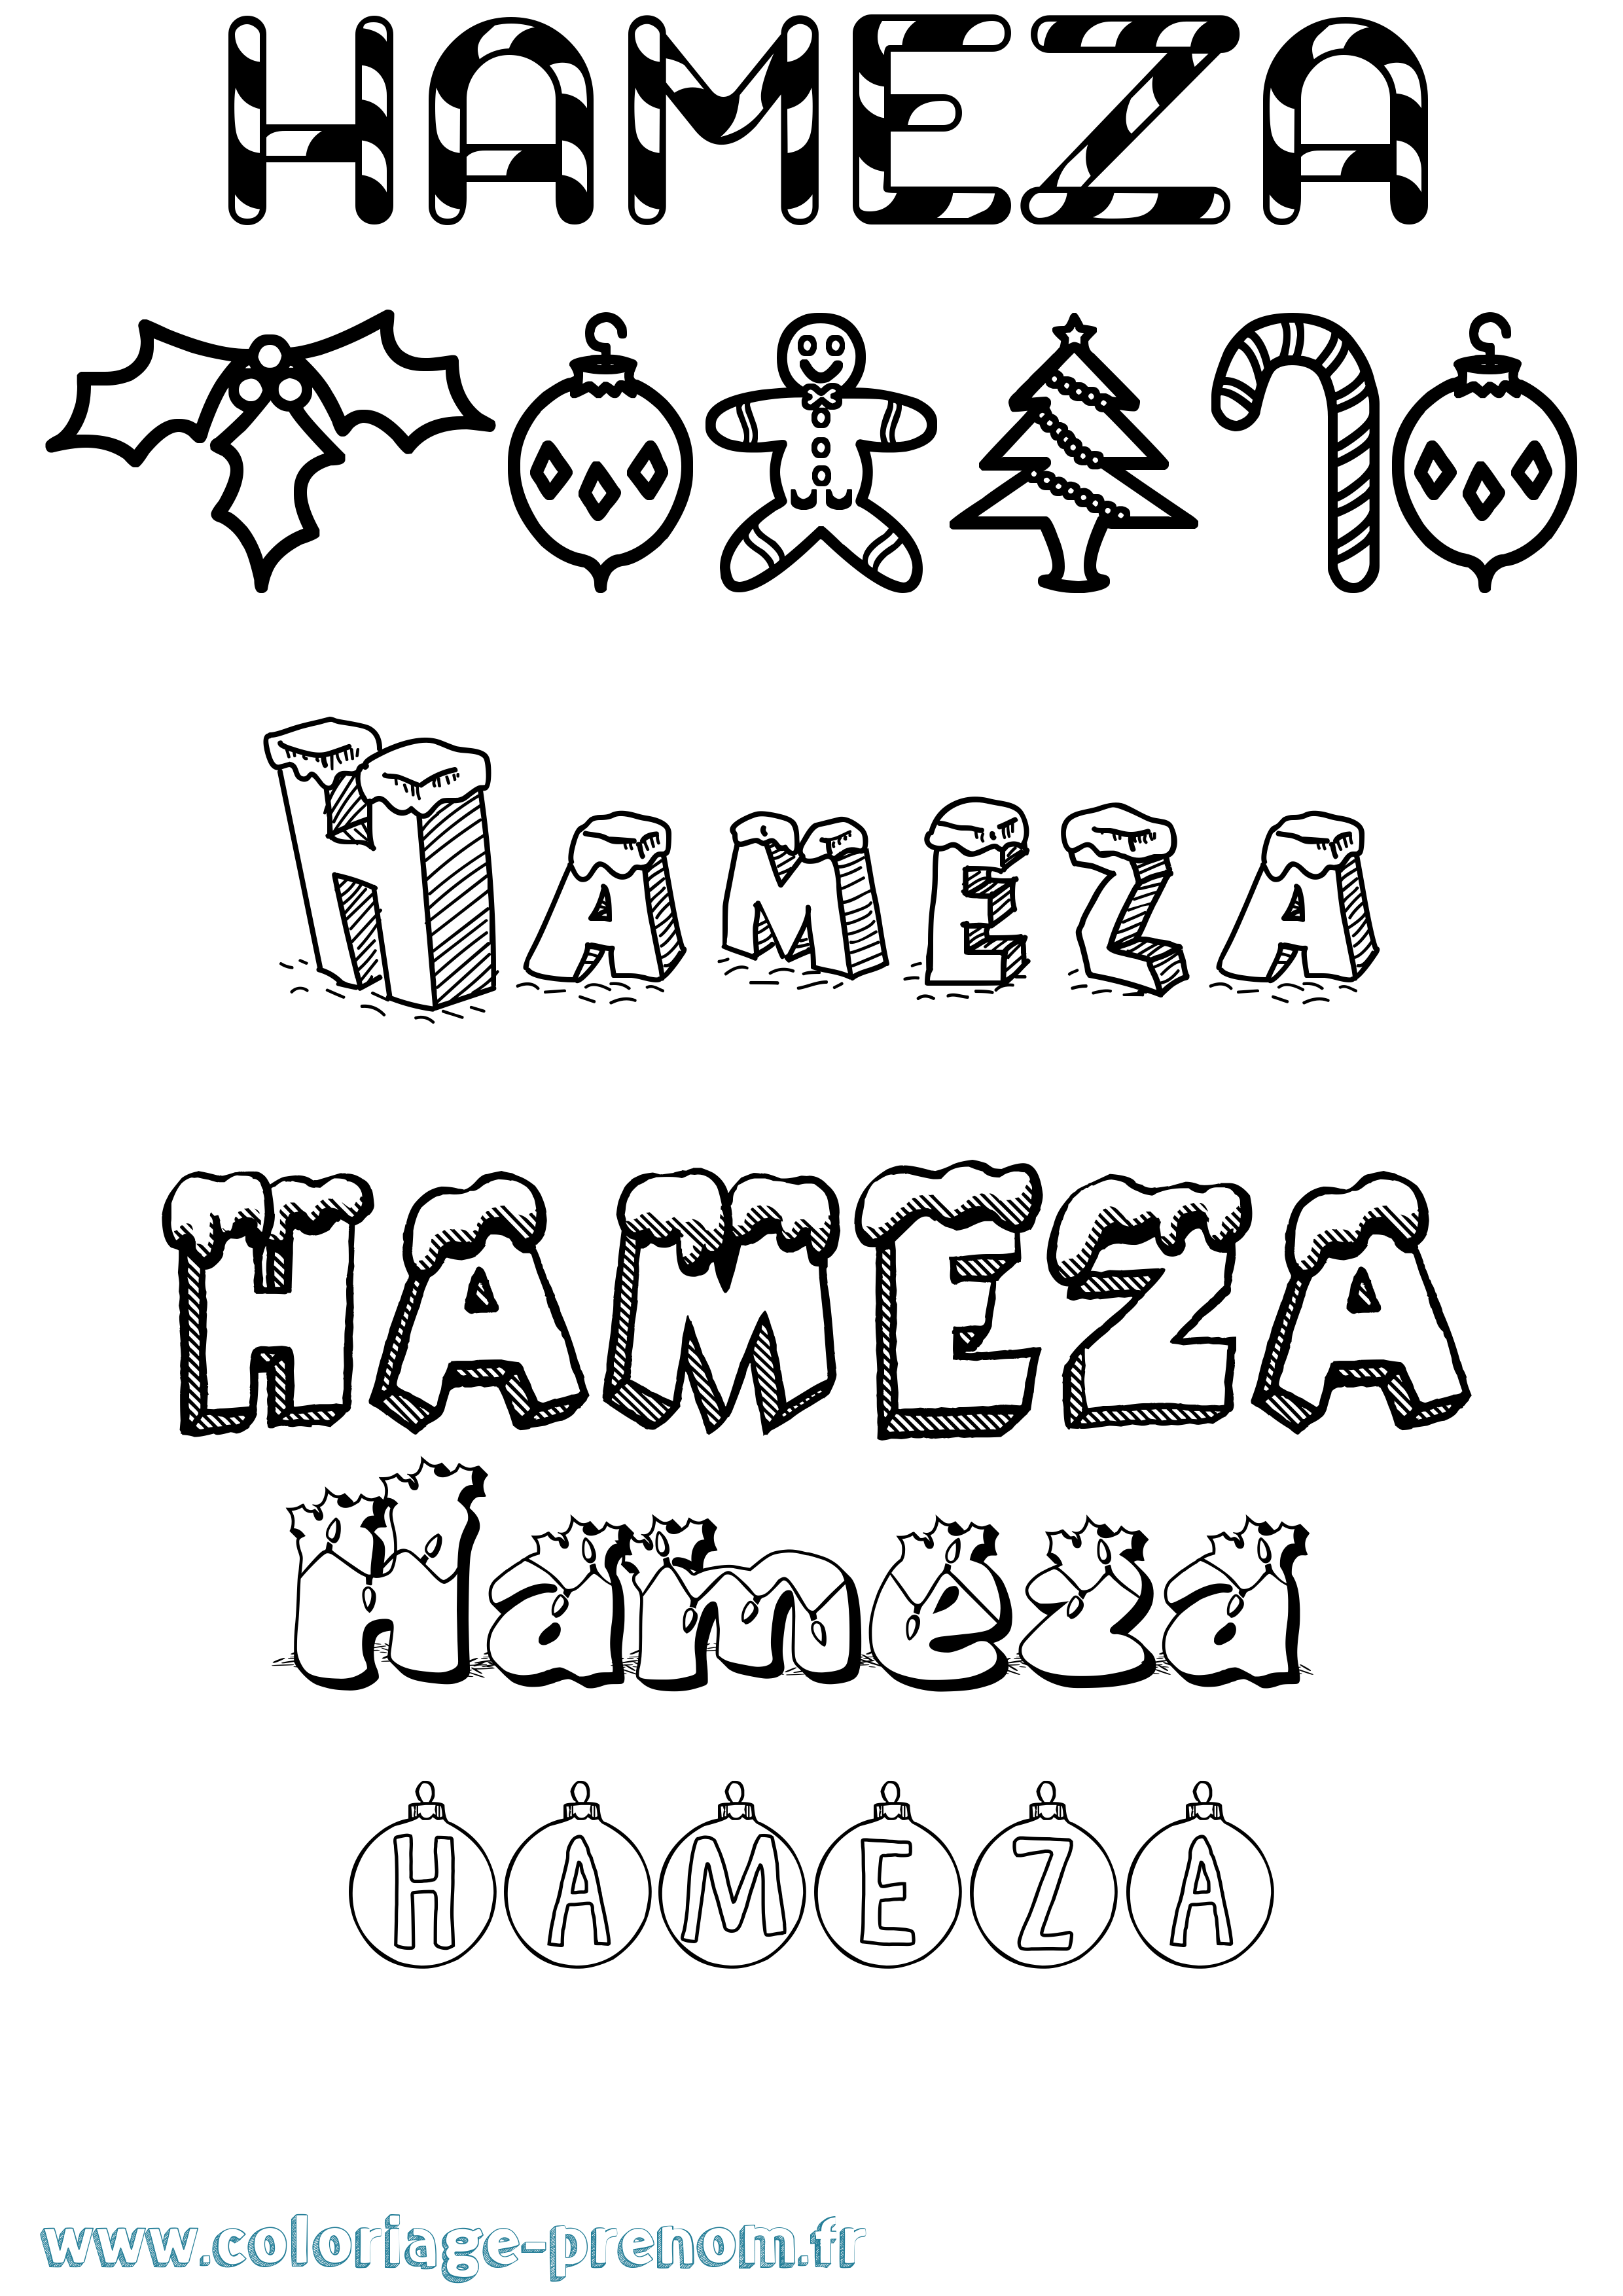 Coloriage prénom Hameza Noël